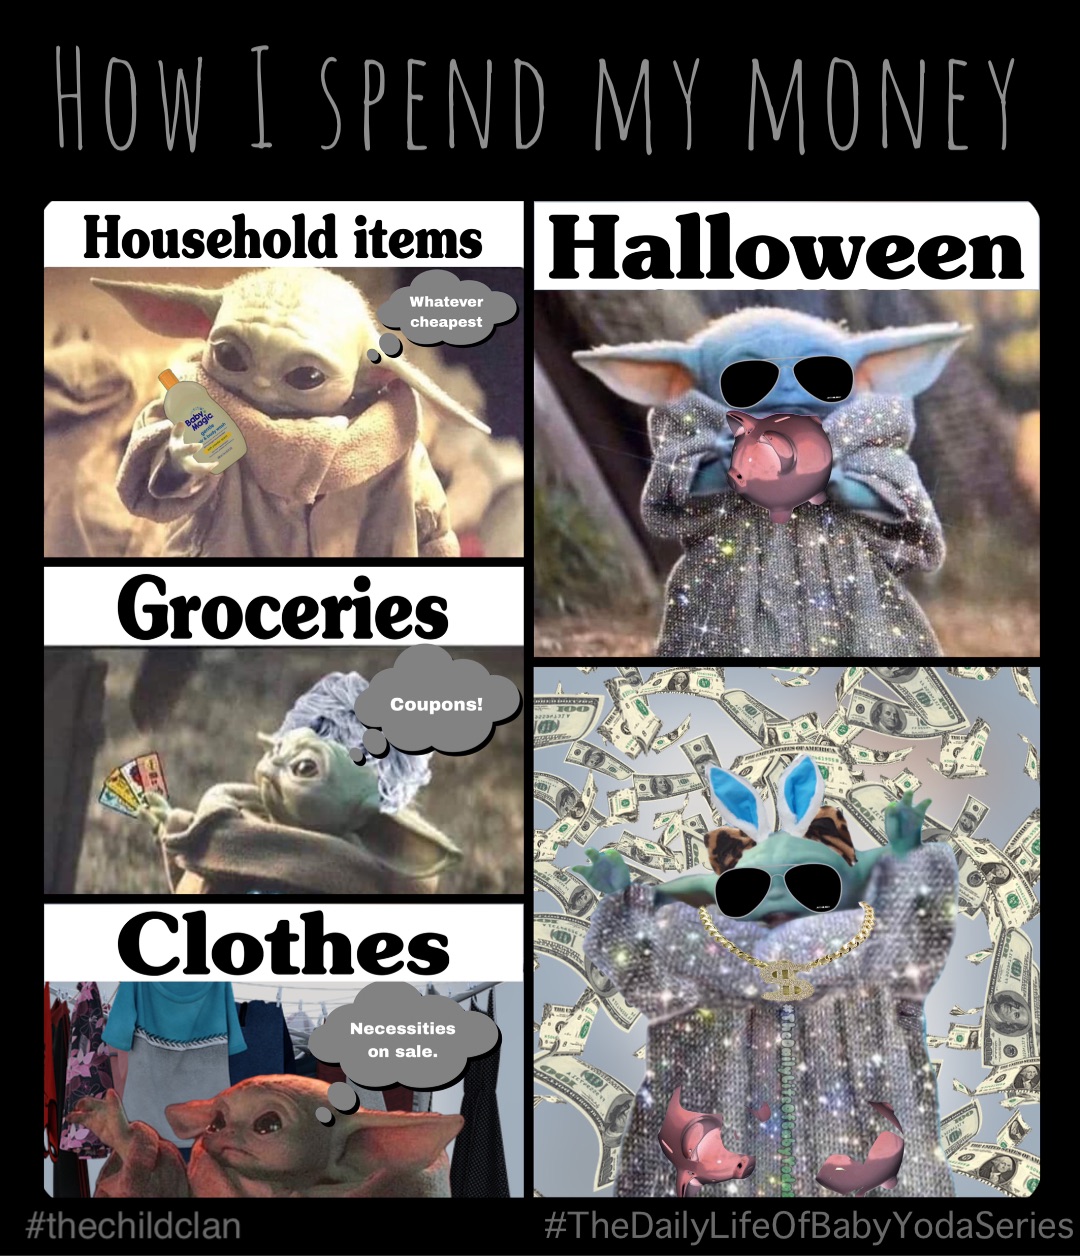 How I spend my money